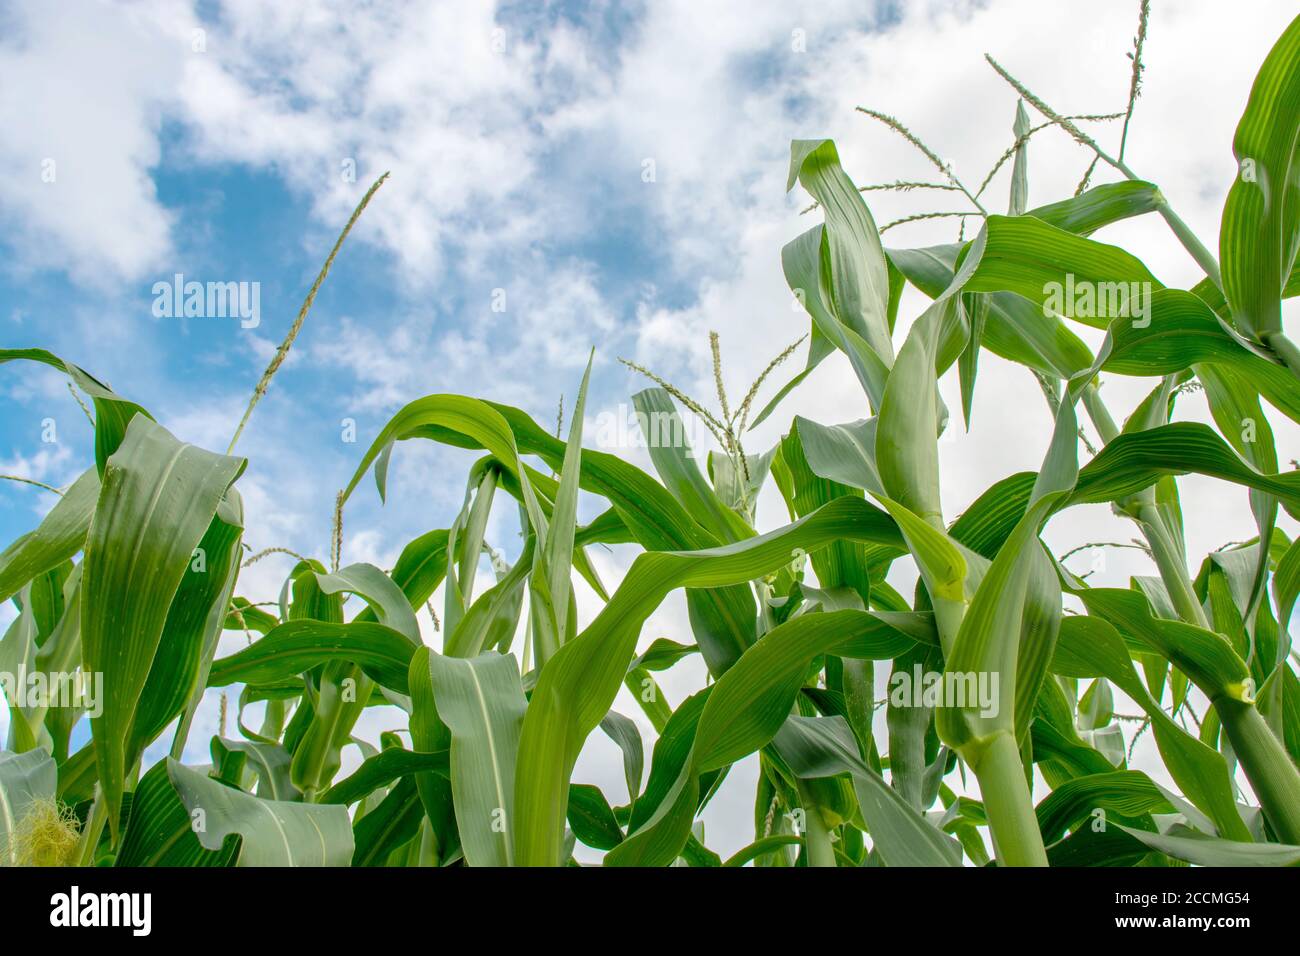 Vue de dessous de la plantation de maïs. Champ de maïs sur fond bleu ciel nuageux. Banque D'Images